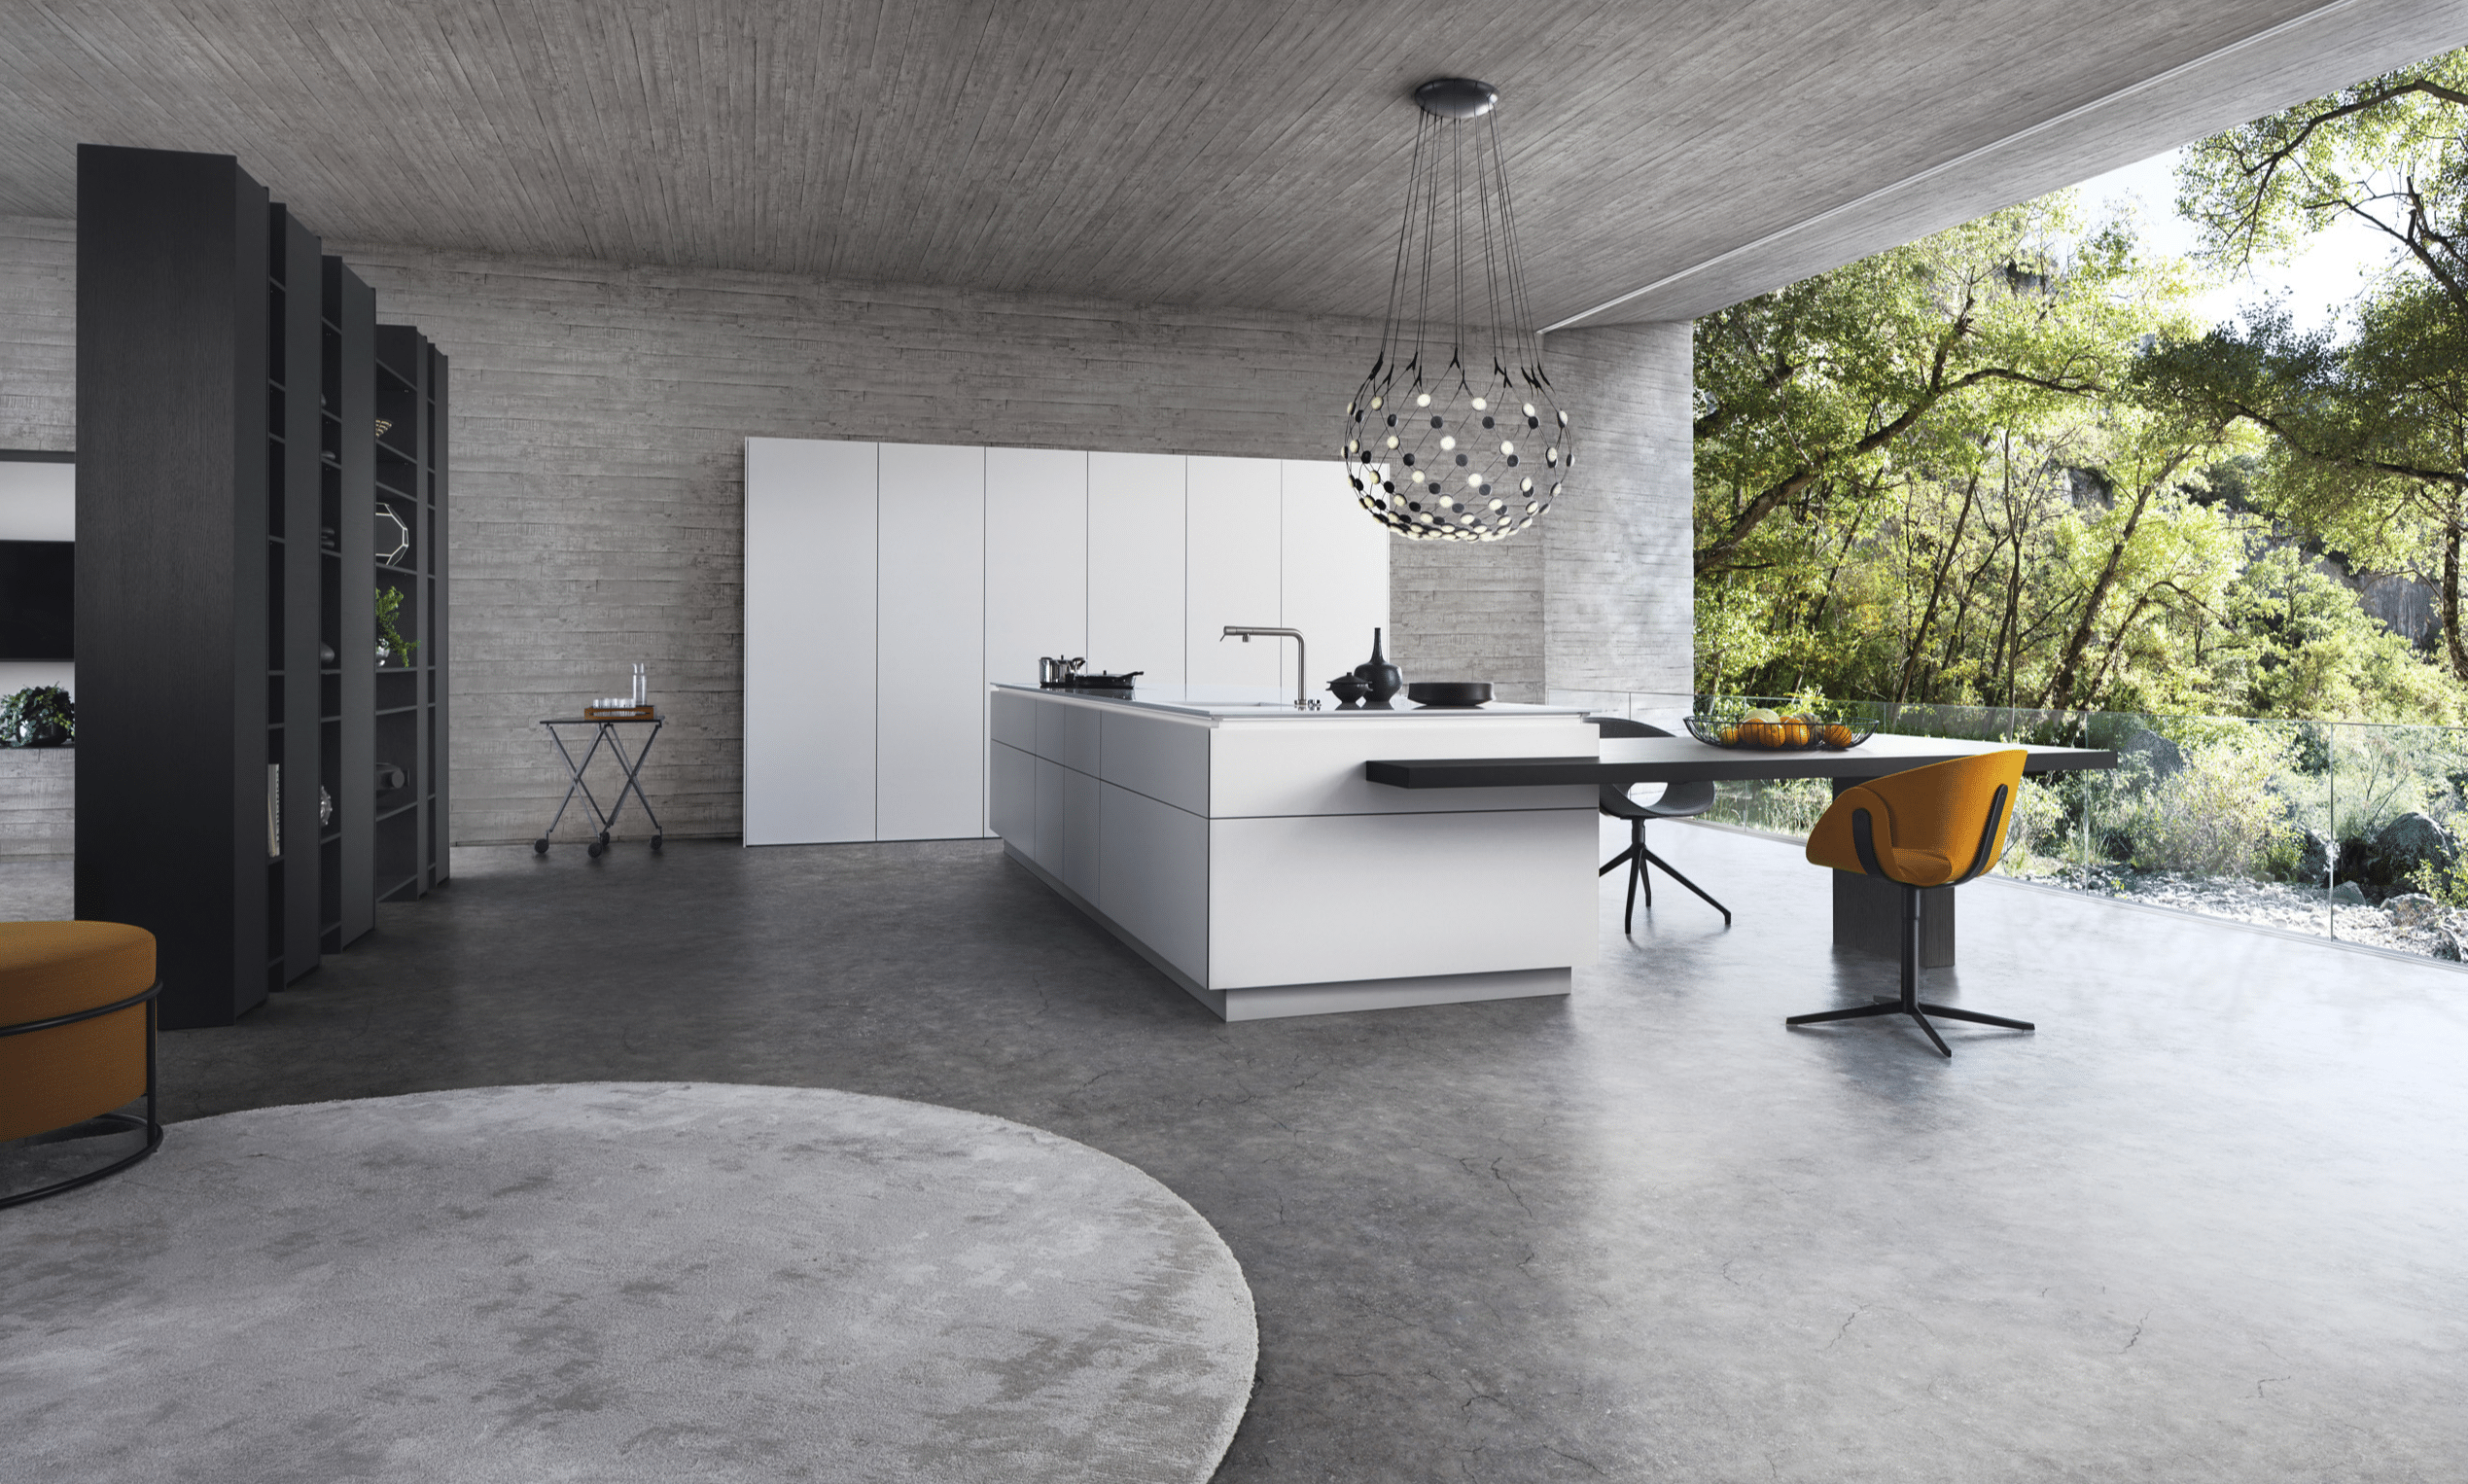 WOHNHAUS Grill & Ronacher zeigt einen offenen Wohnraum mit einer modernen, grifflosen Inselküche LEICHT Küchen in Weiß mit kombiniertem Barbereich und Hocker.